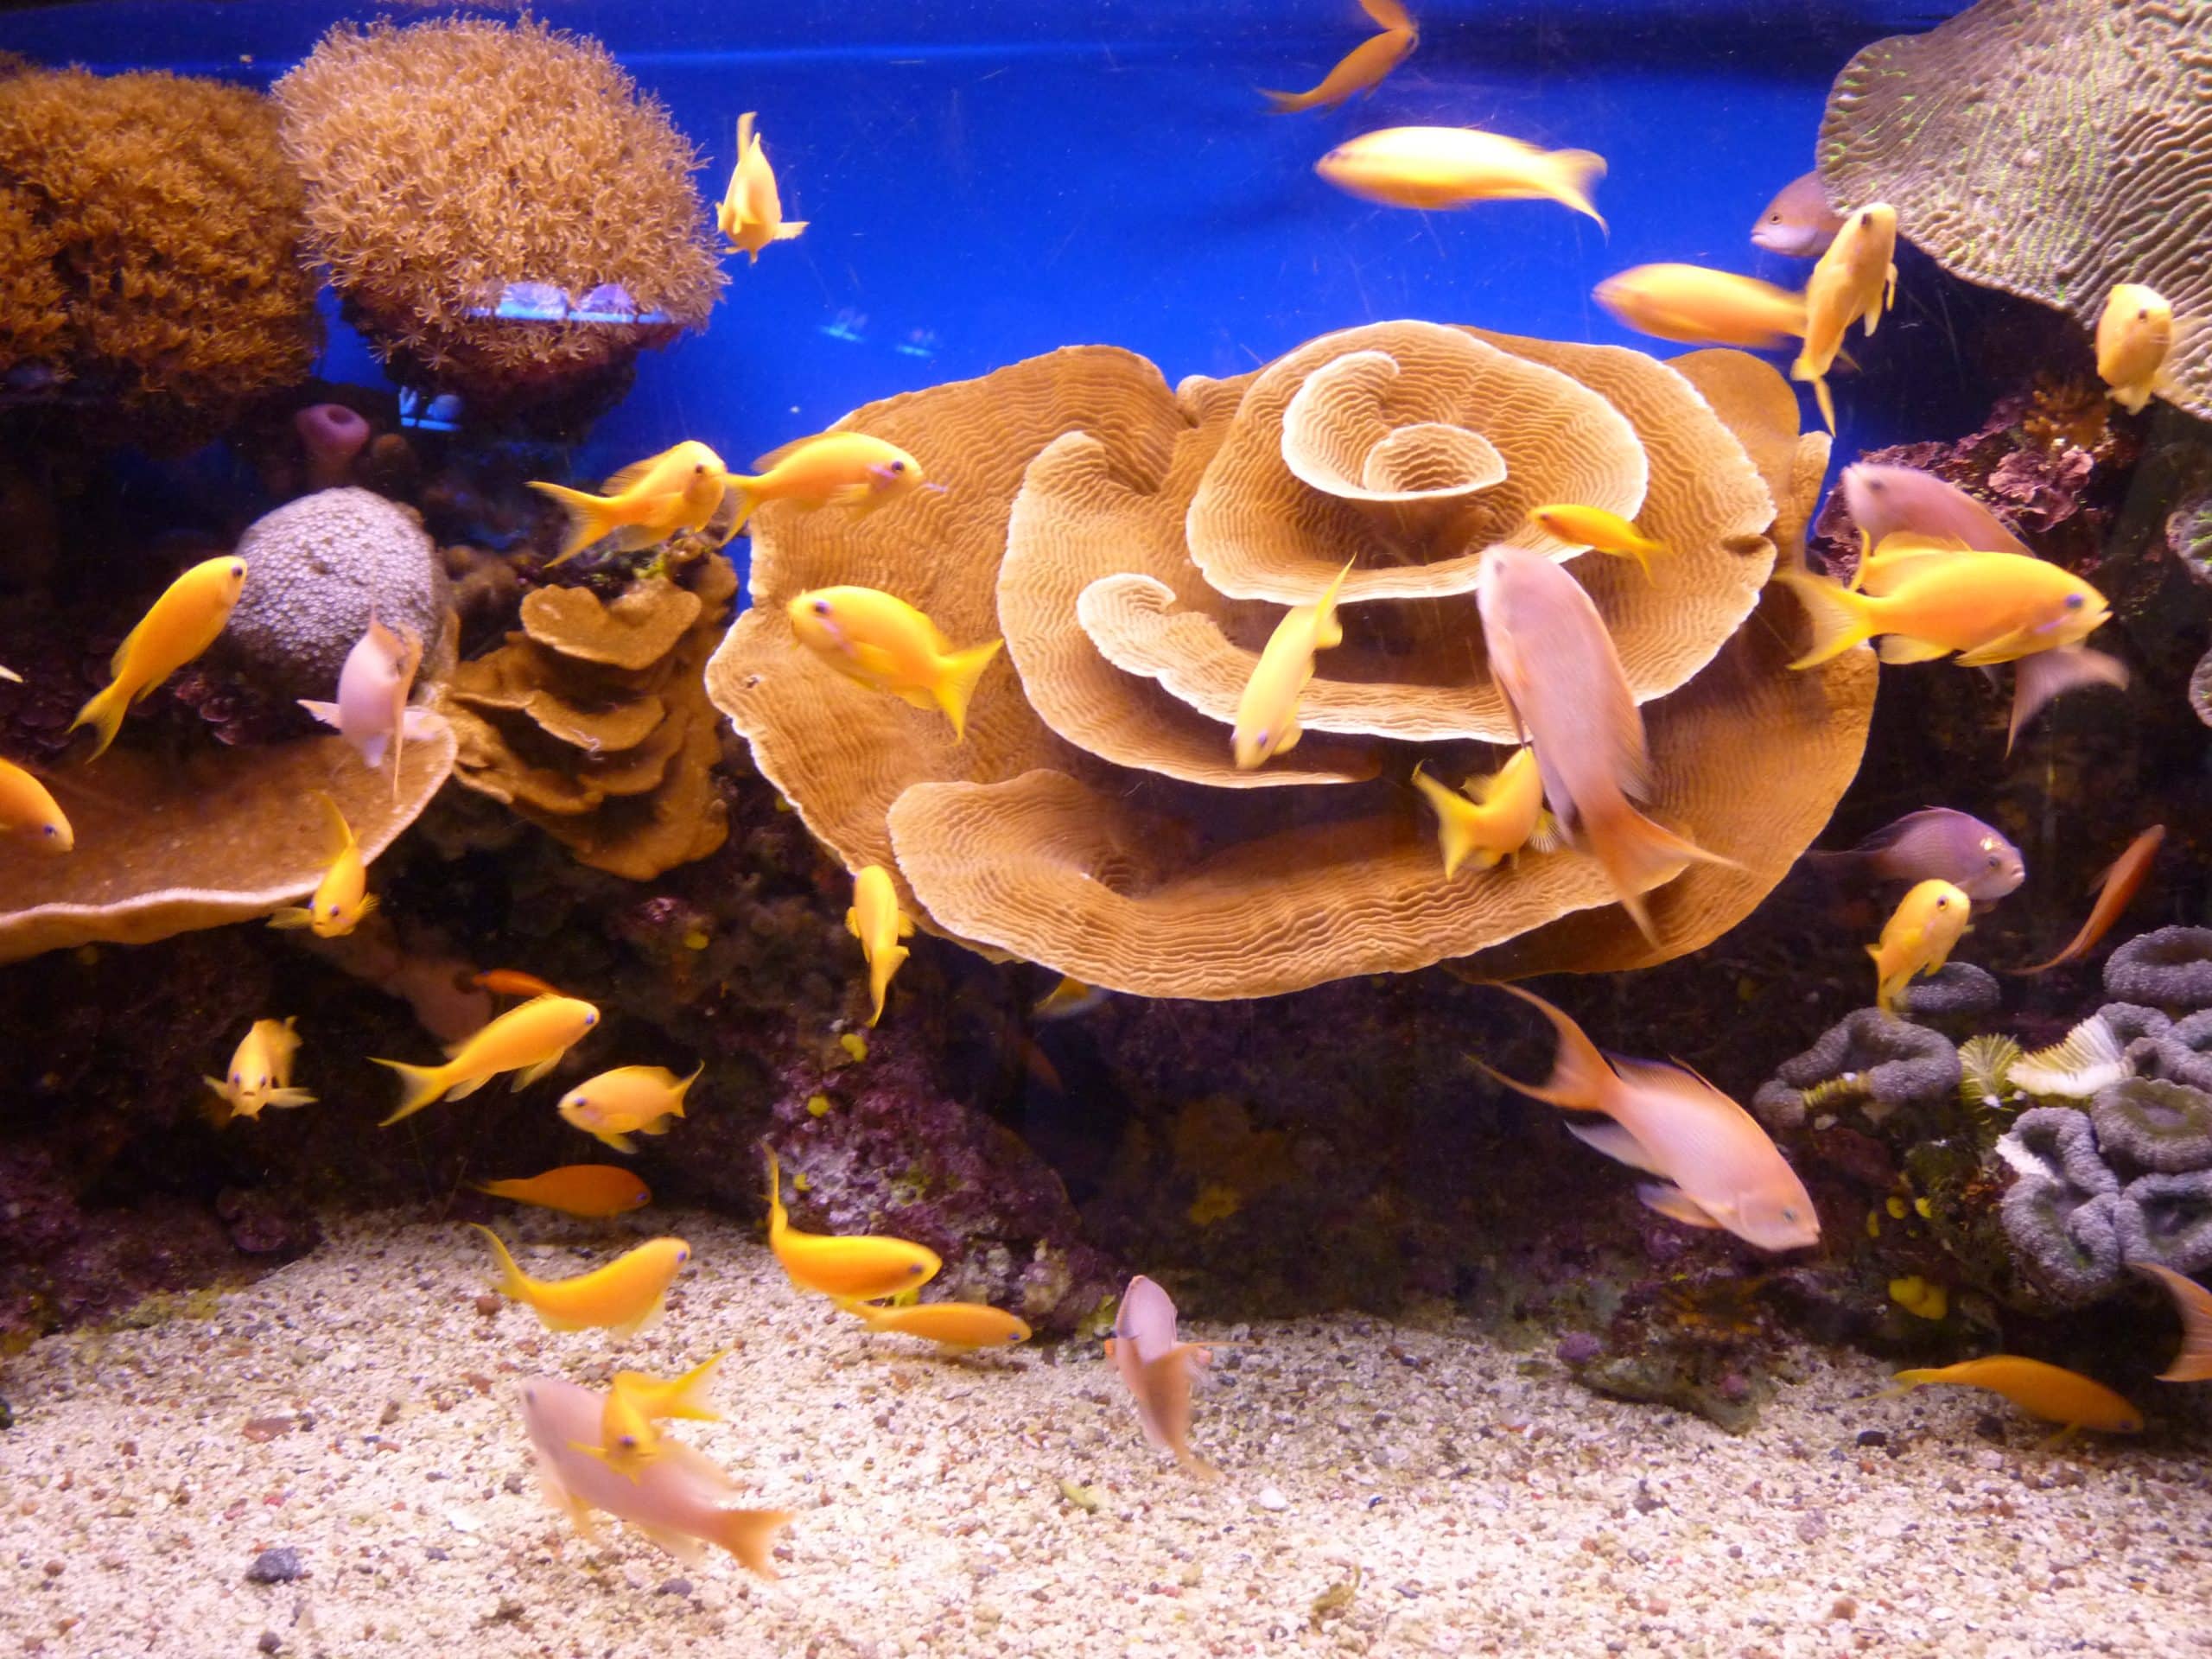 האלמוגים והדגים בשמורת הטבע הימית (צילום: Ricardo Tulio Gandelman)